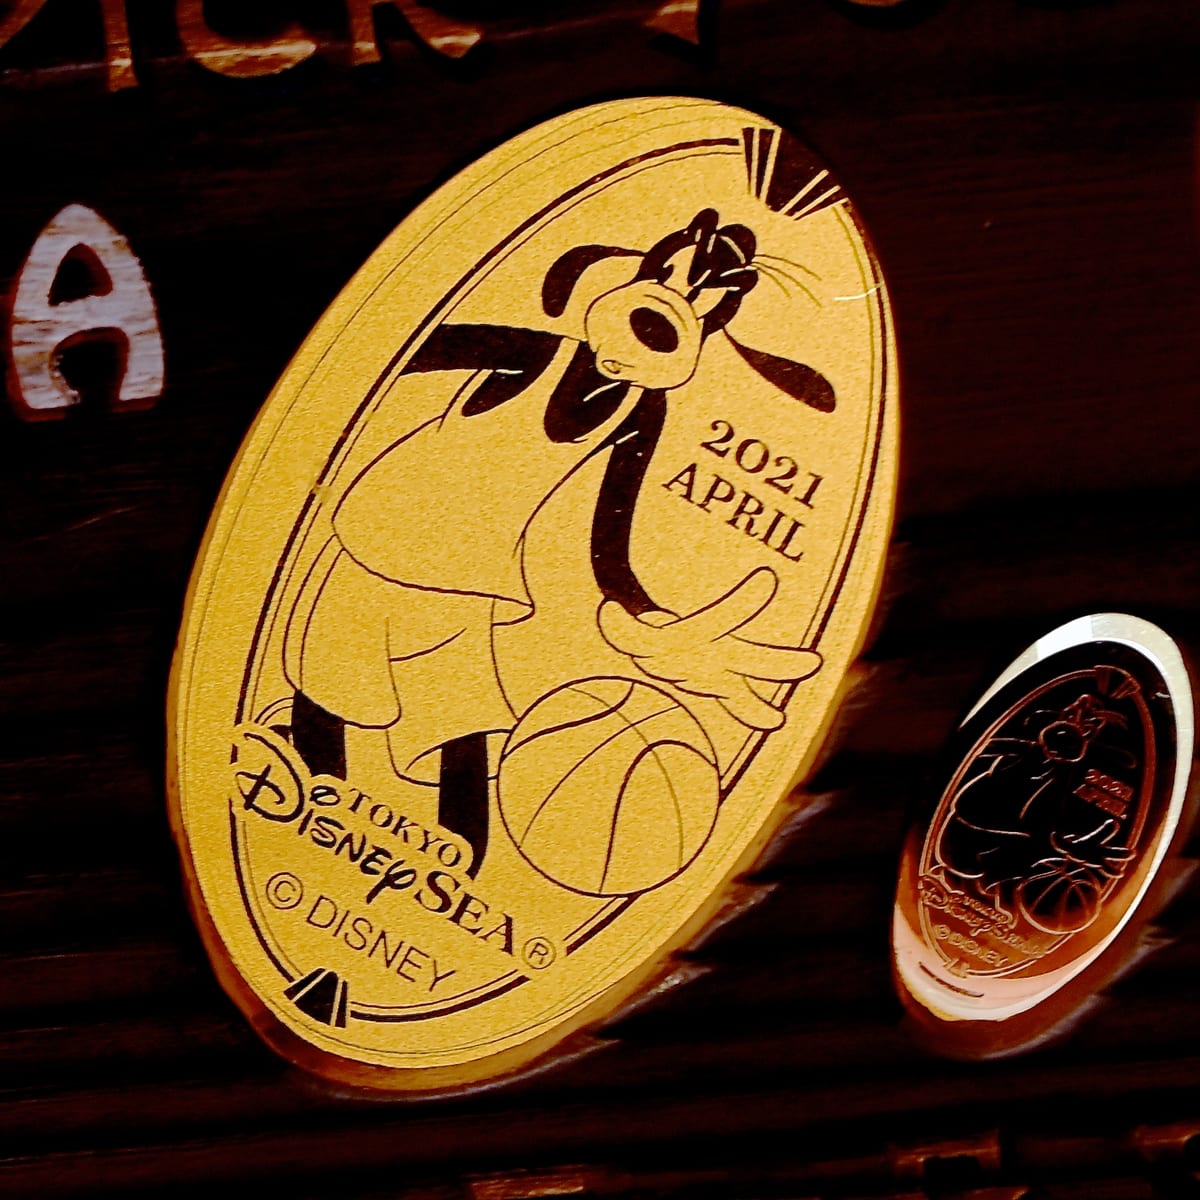 東京ディズニーシー2021年4月マンスリースーベニアメダル